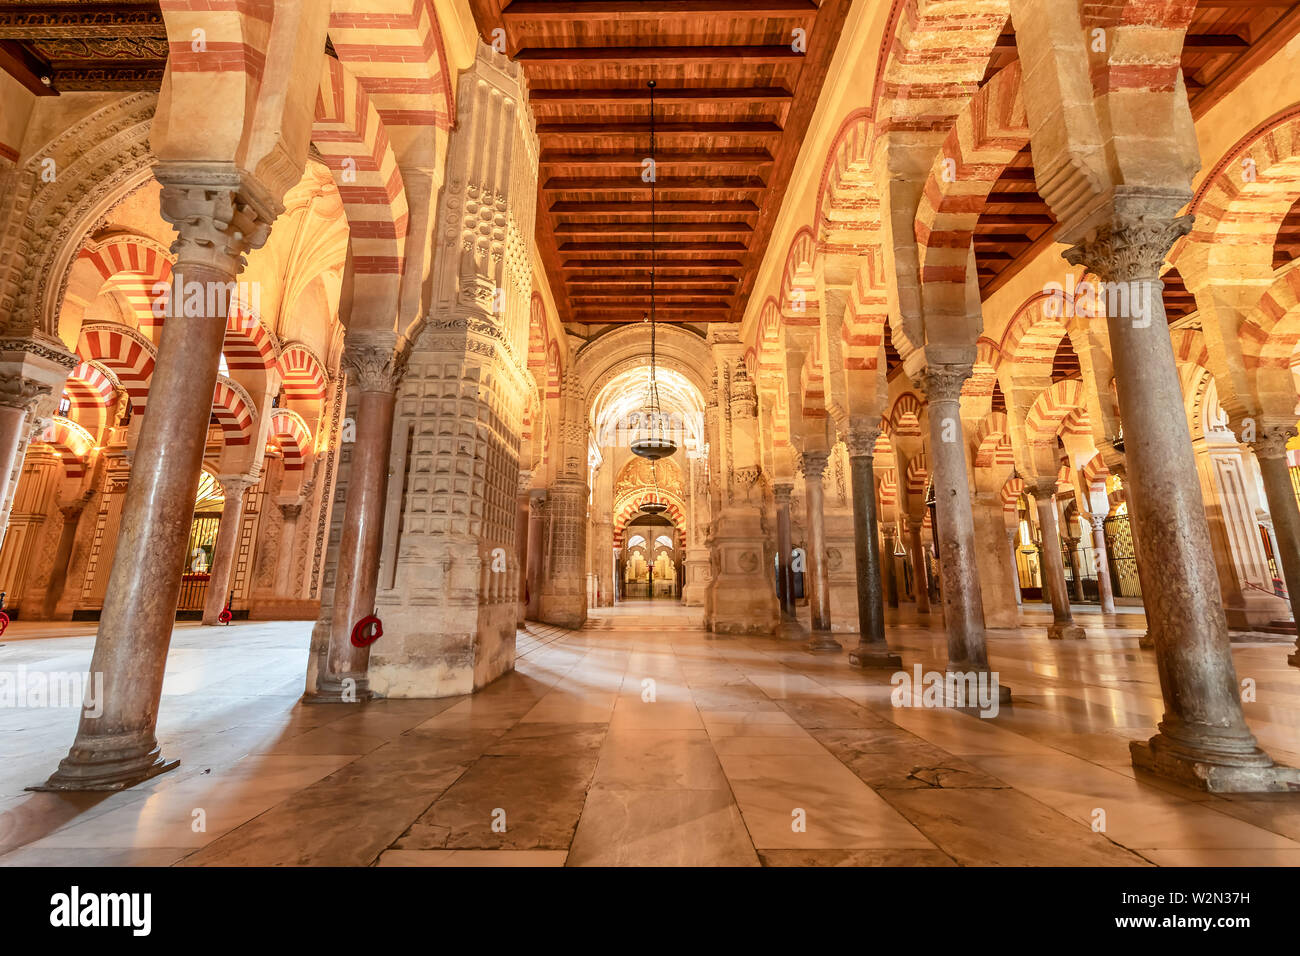 Cordoba, Spanien - Juli 7, 2019: Die Große Moschee oder die Mezquita, hypnotisierende Bögen im Inneren der Großen Moschee von Córdoba oder der Kathedrale - Moschee von Córdoba Stockfoto